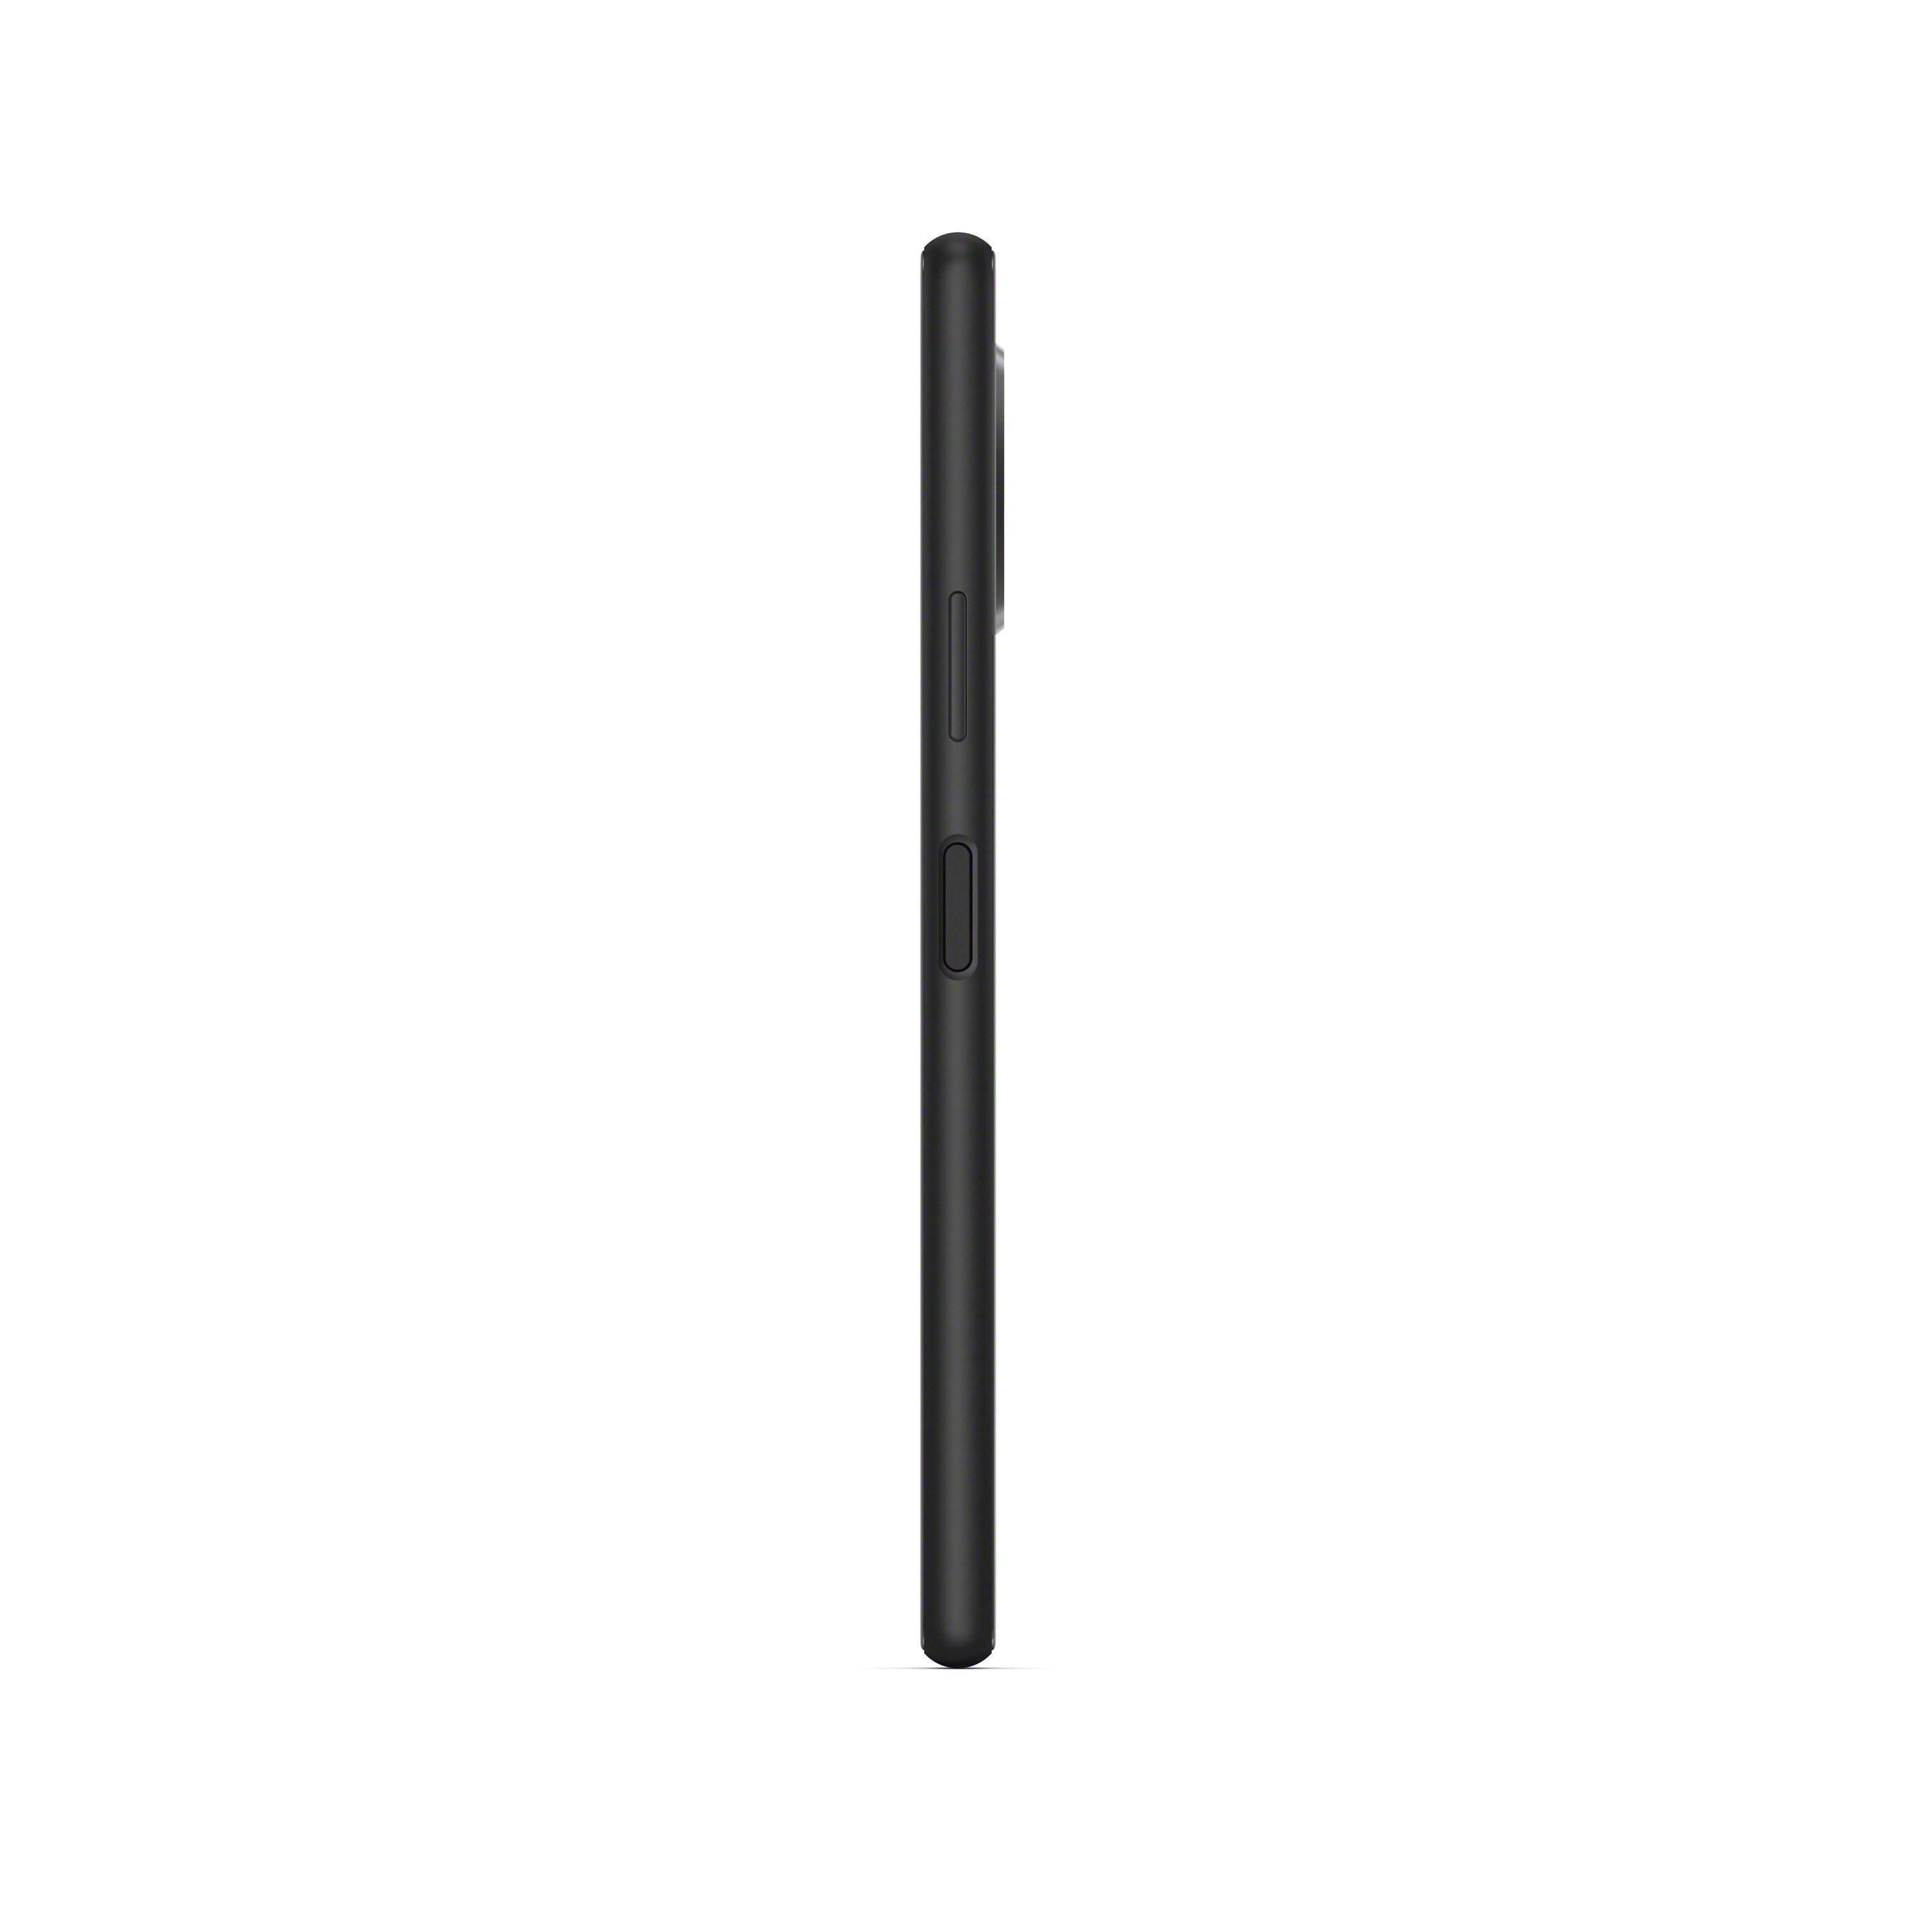 SONY Xperia 10 128 SIM Schwarz Dual GB 21:9 II Display